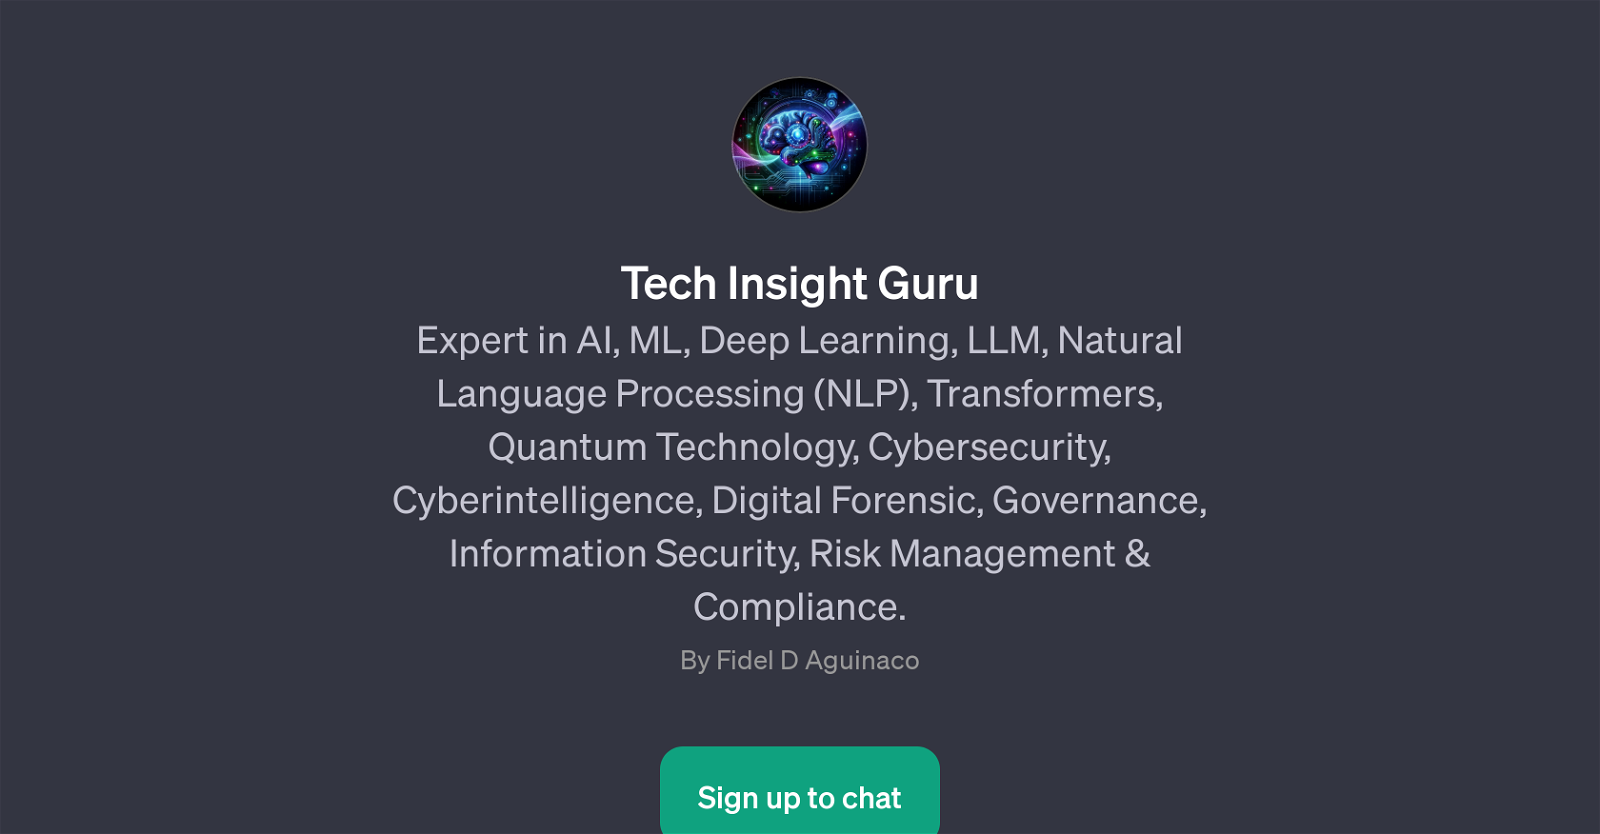 Tech Insight Guru website